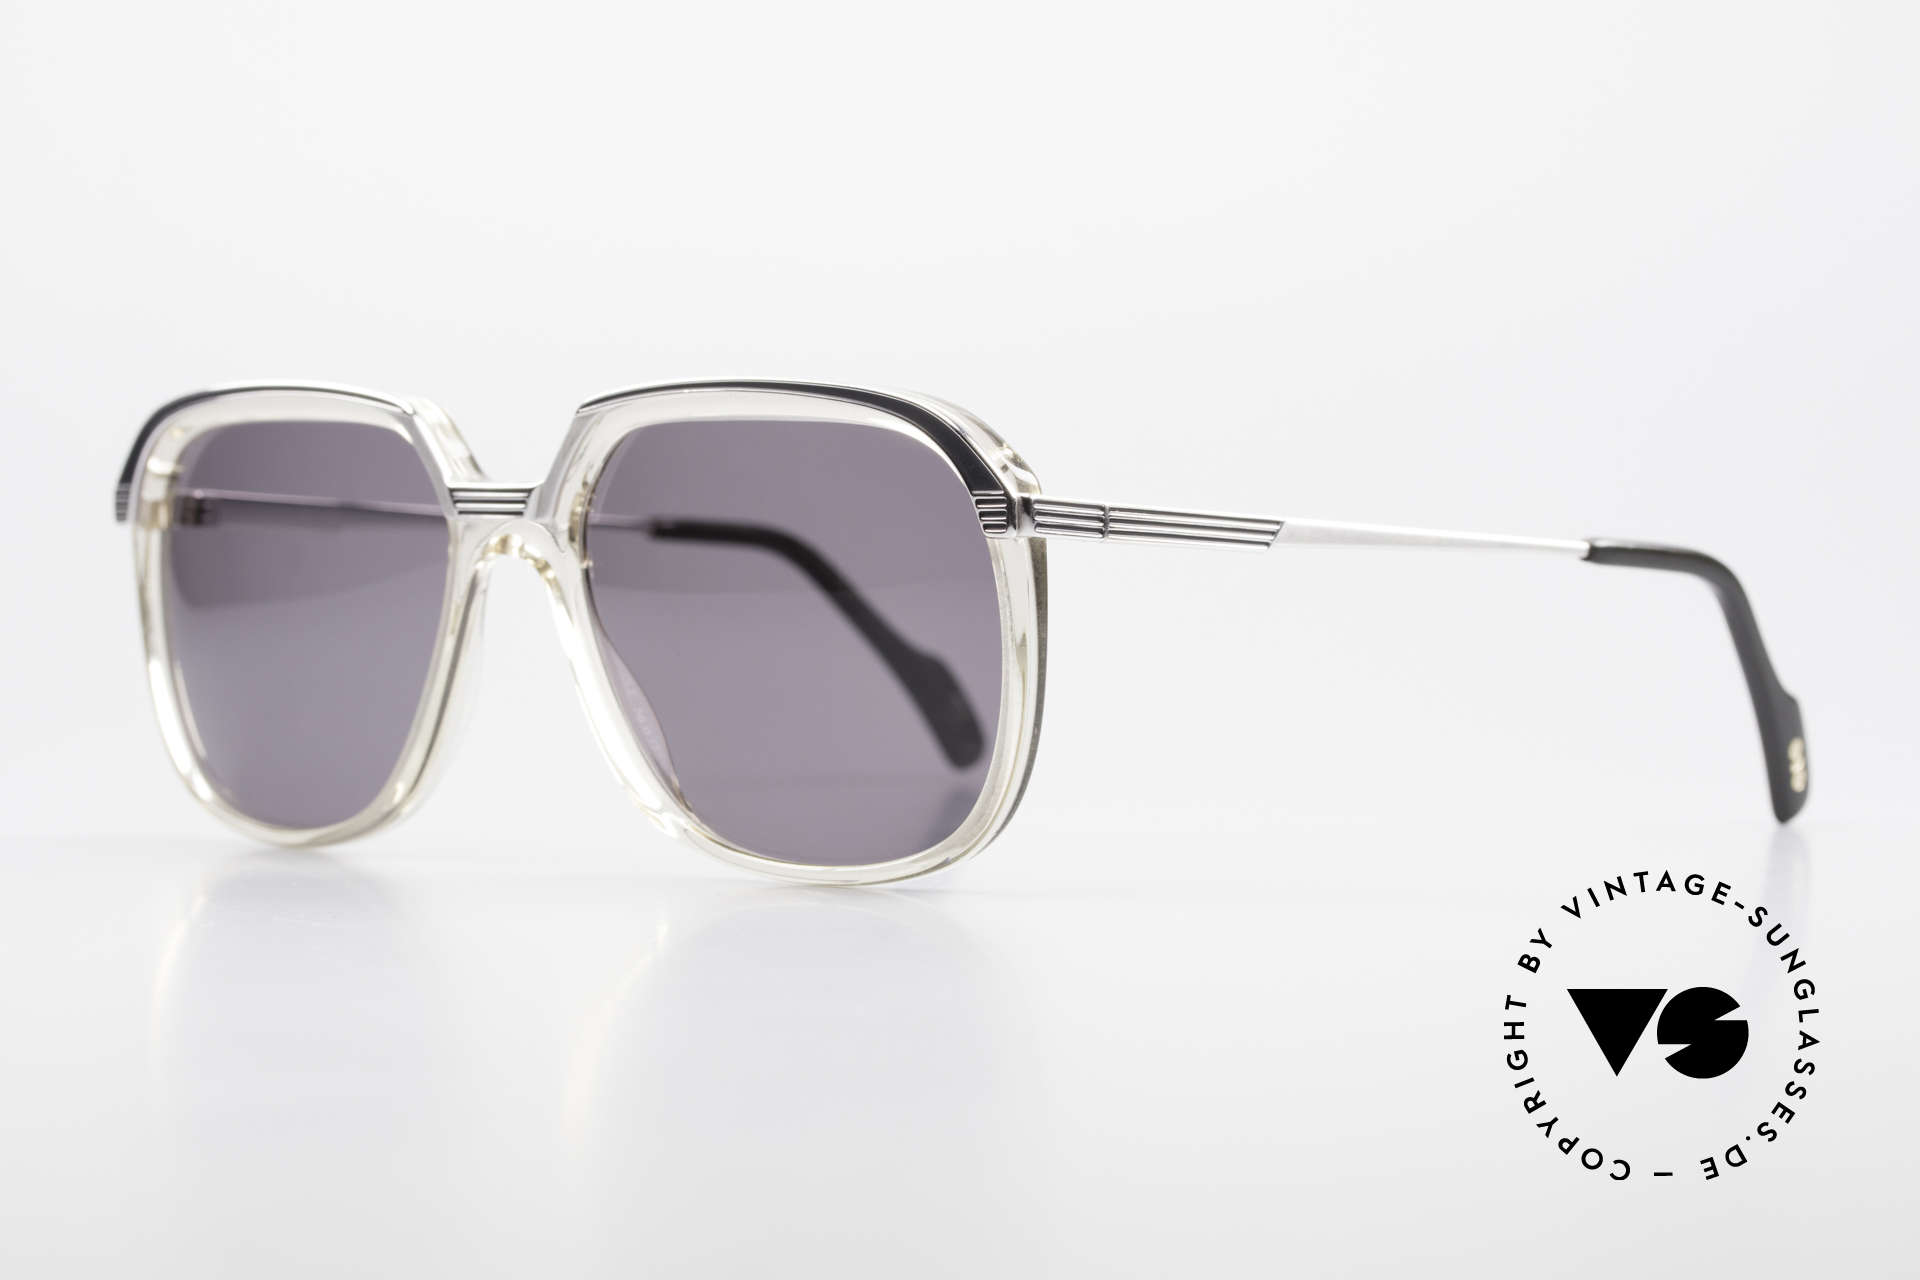 Metzler 6620 True Vintage 80's Sunglasses, metal frame & acetate front firmly screwed together, Made for Men